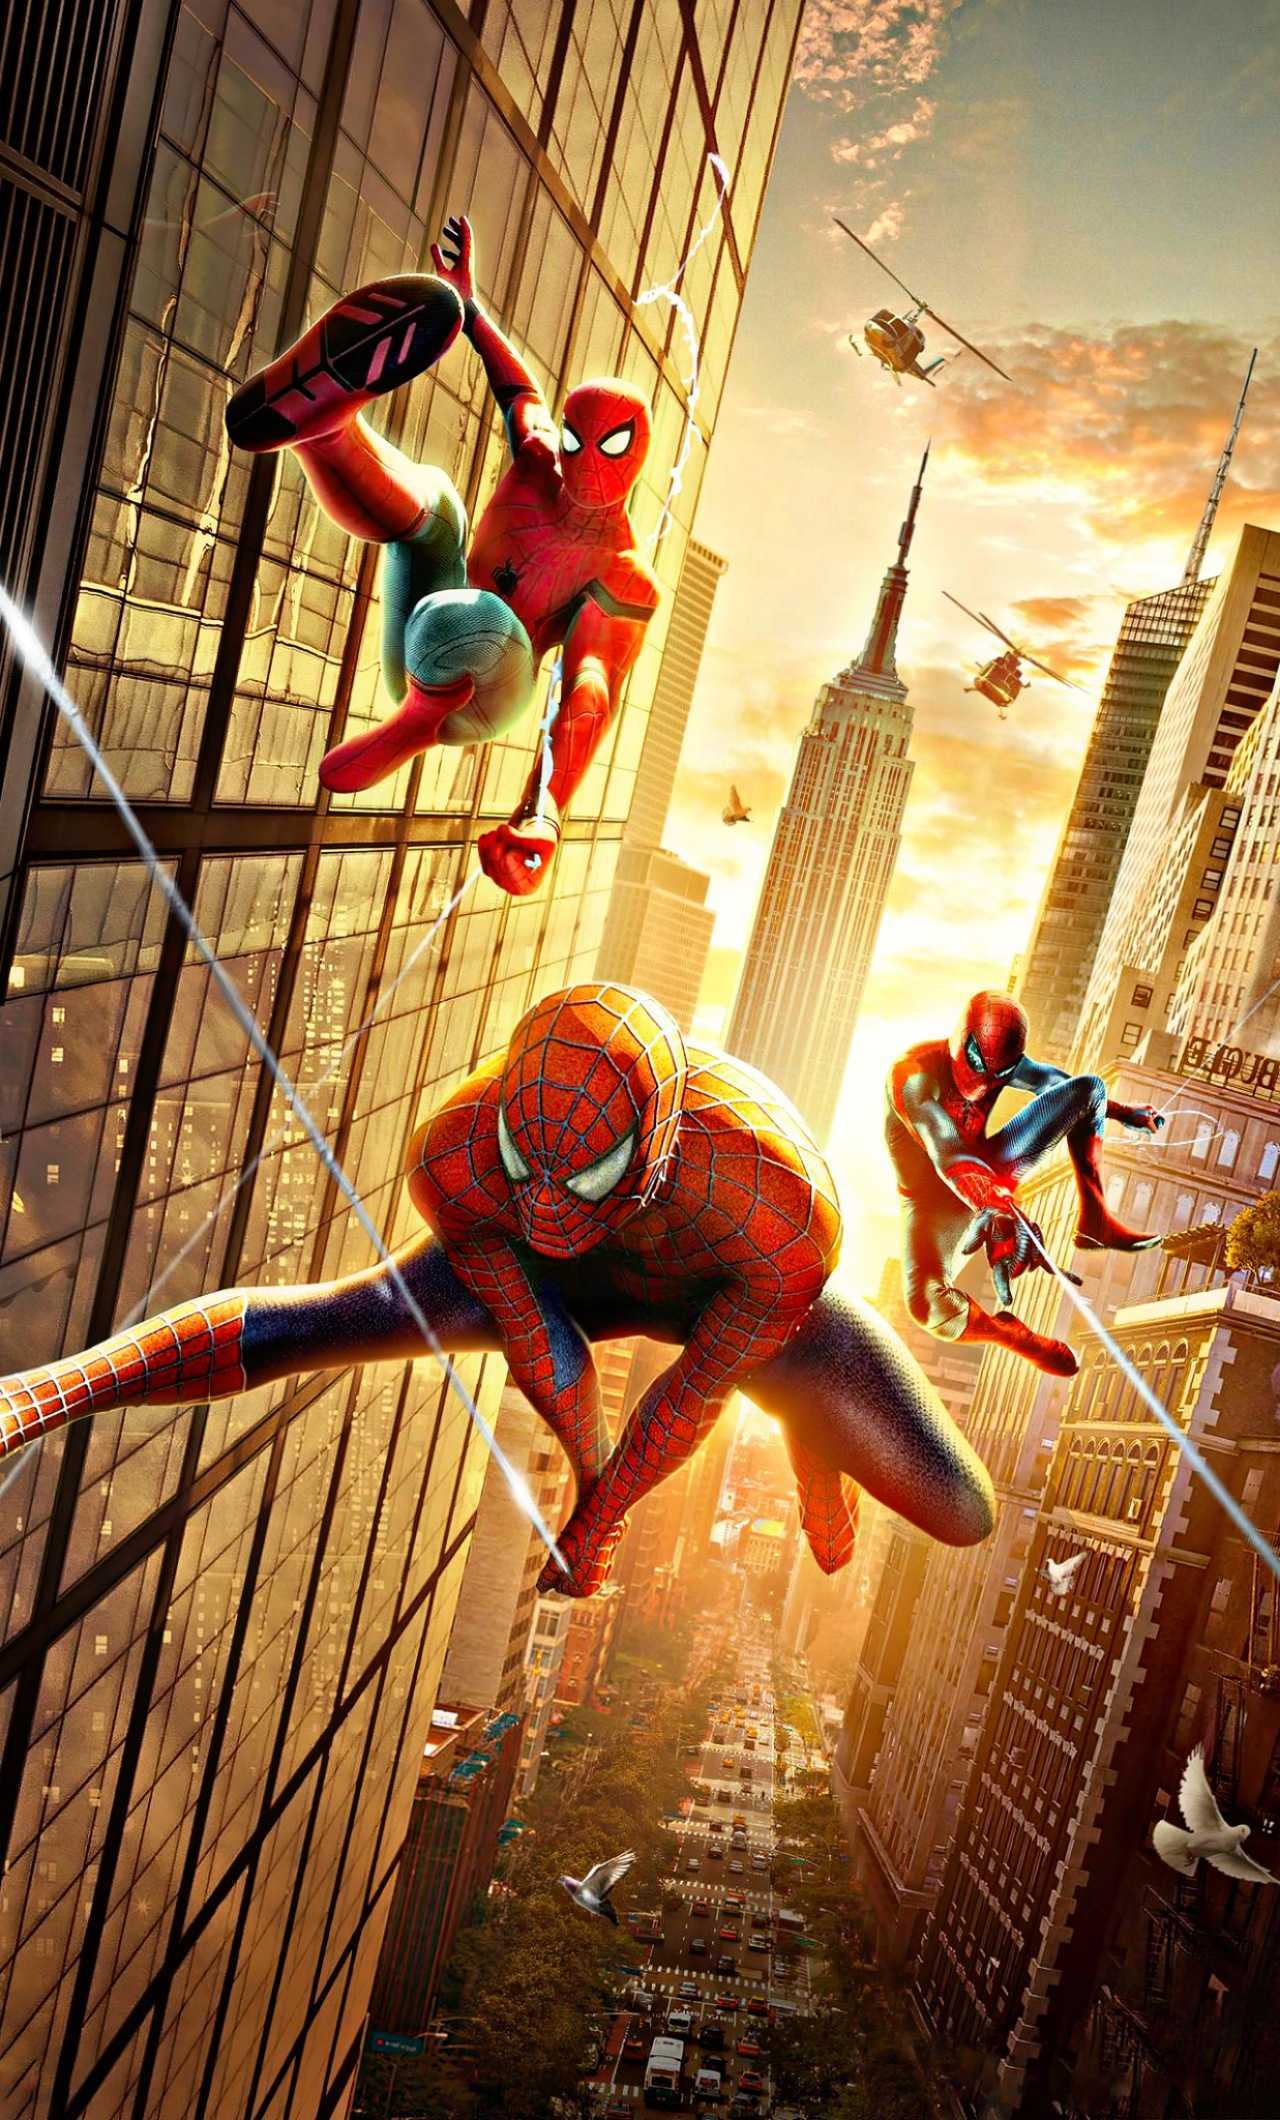 Spiderman No Way Home Wallpaper - EnJpg